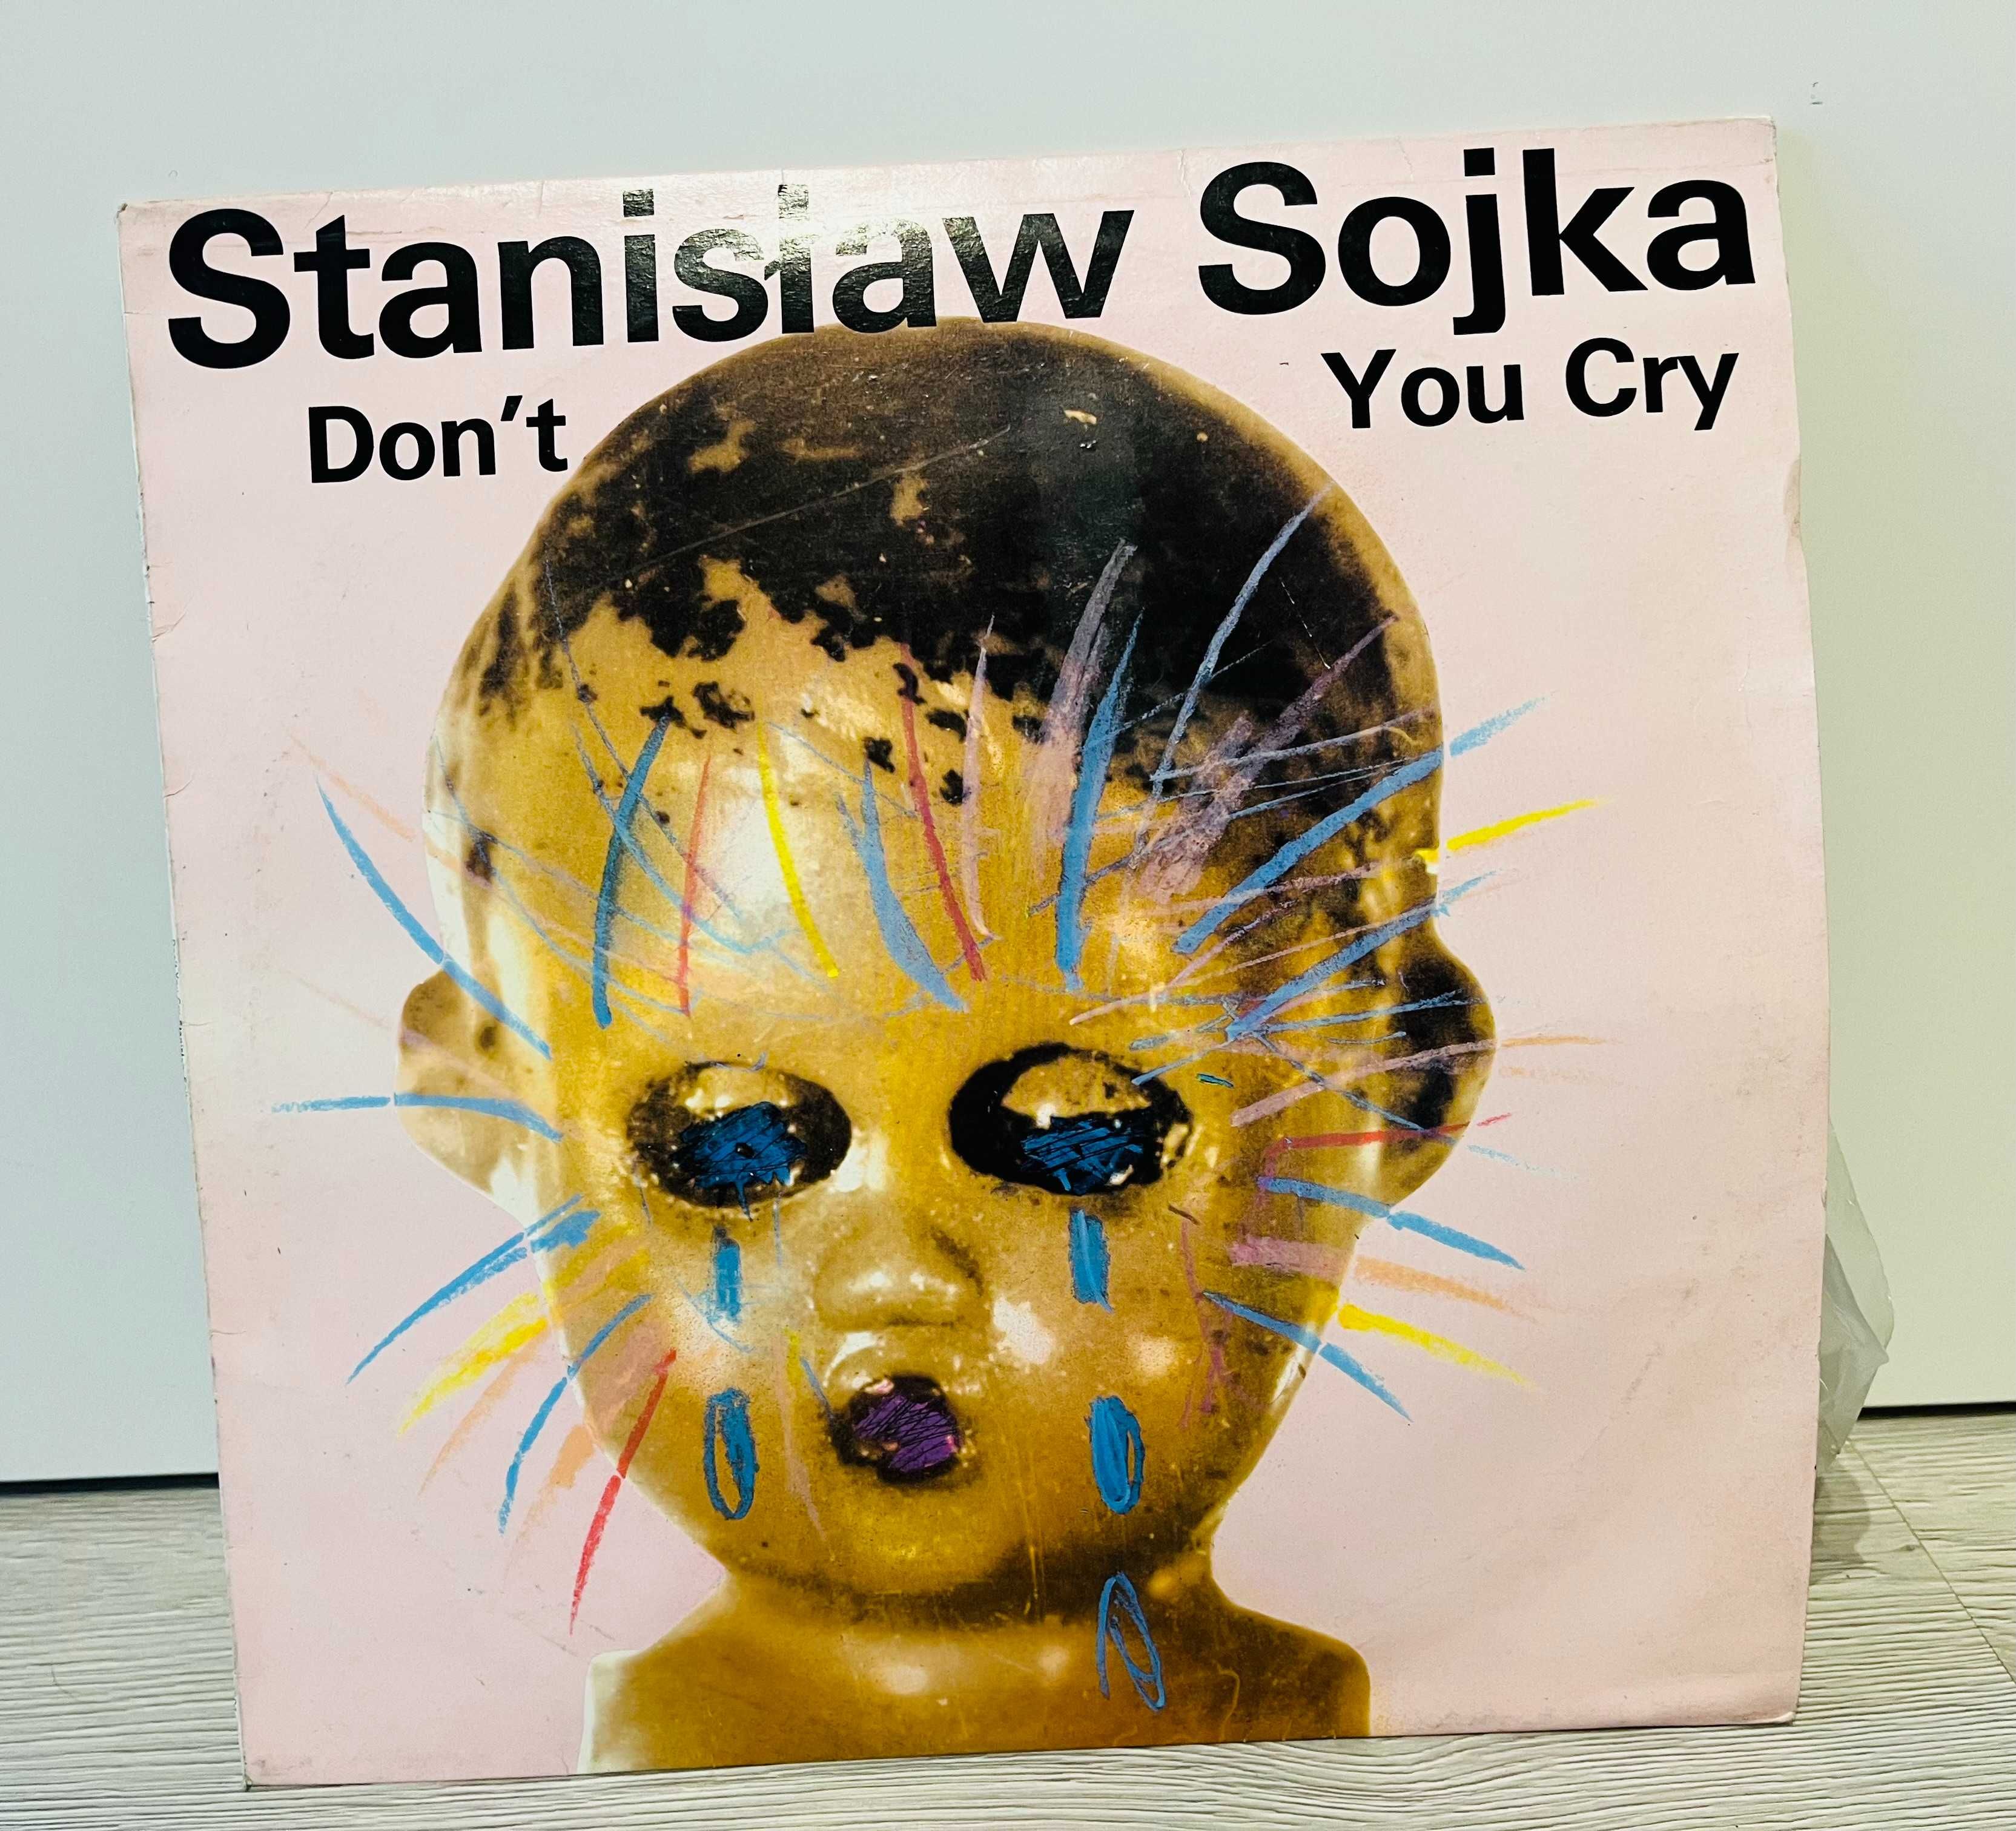 Winyl Stanisław Sojka "Don't you cry" 1979 analog.